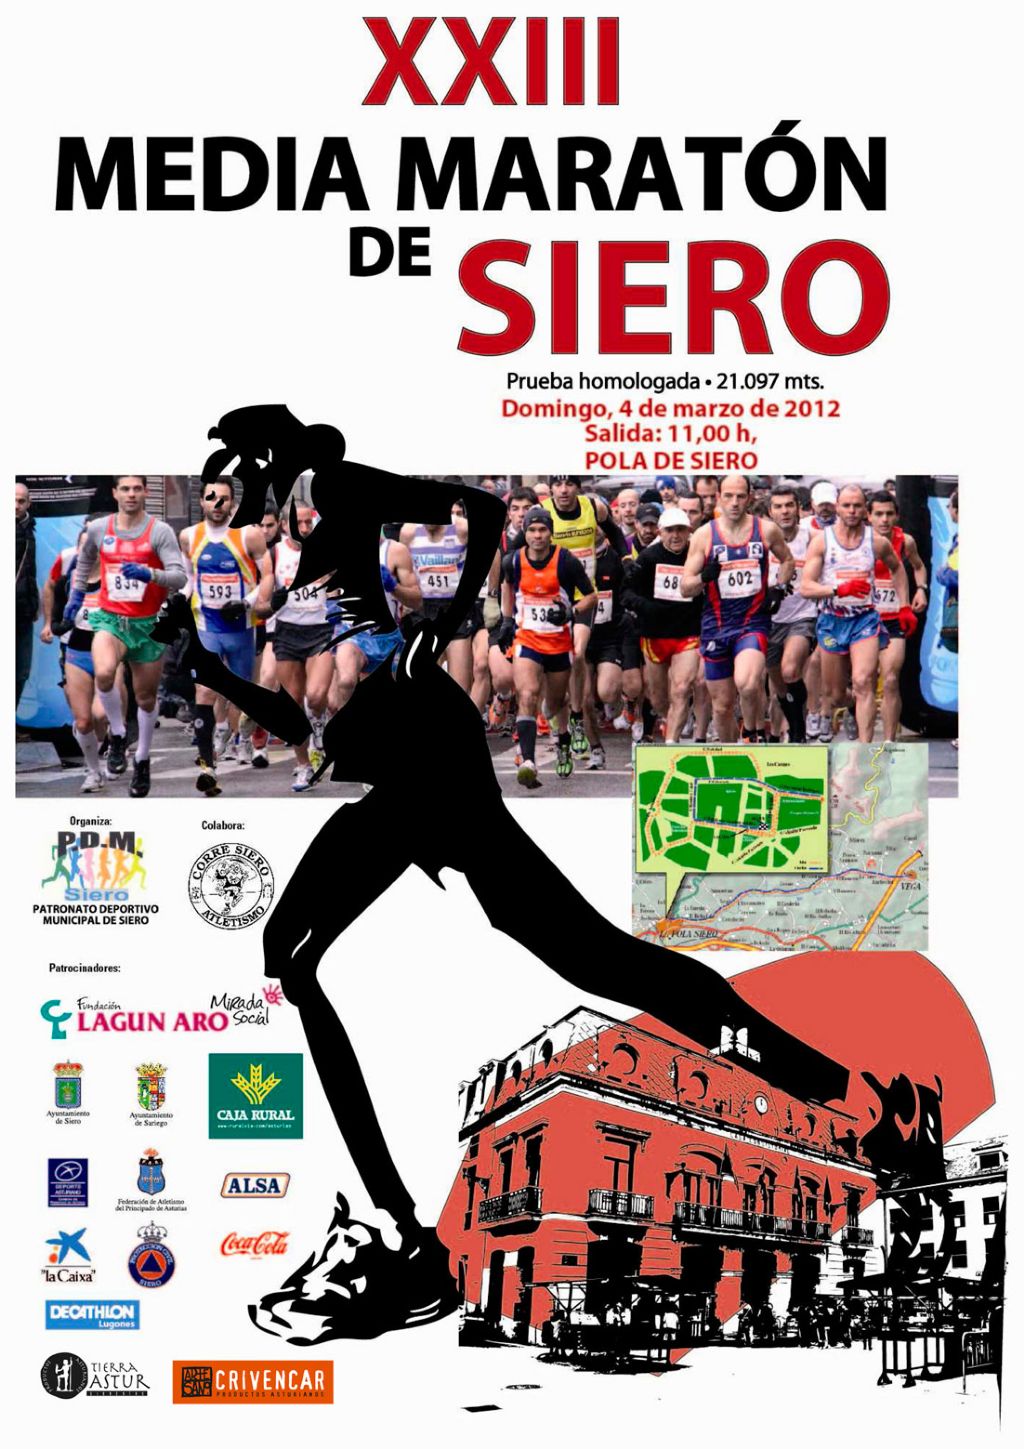 Crivencar patrocina la XXIII Media Maratón de Siero